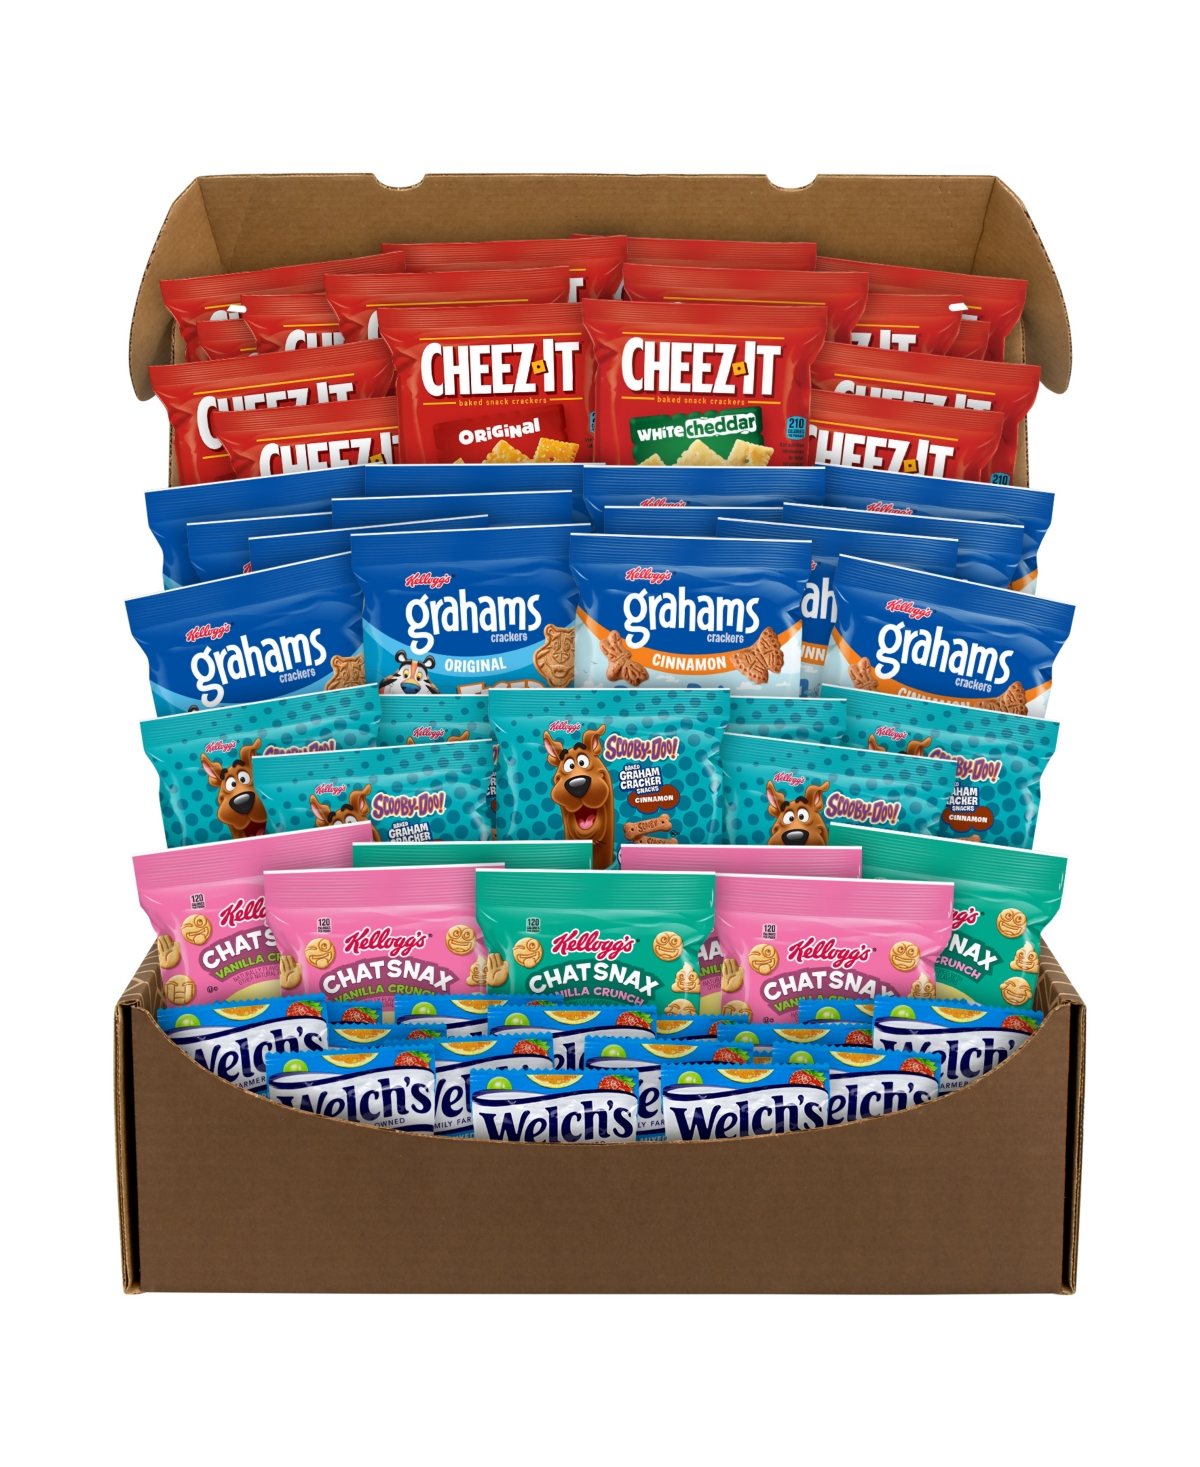 Snackboxpros Schoolyard Snacktime Snack Box, 60 Count In No Color